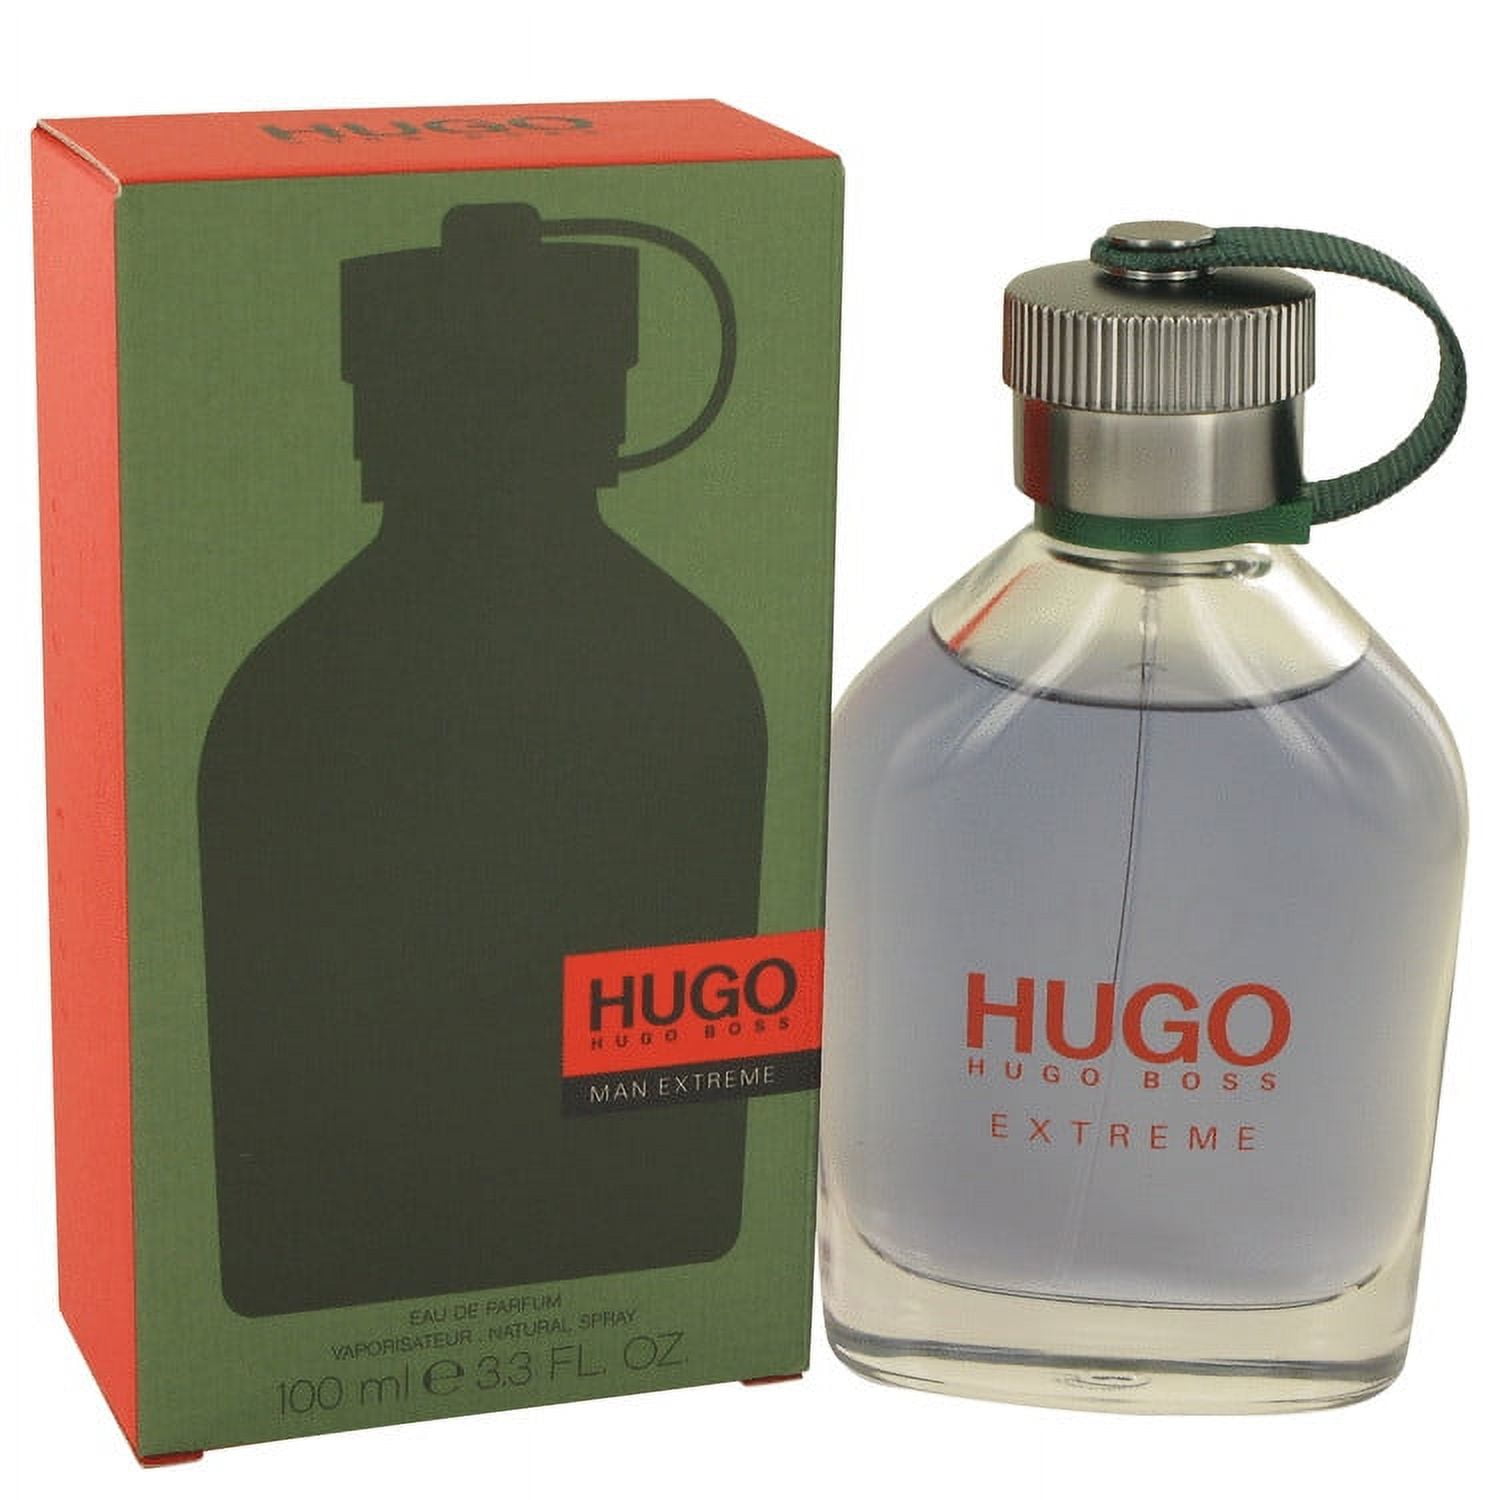 Hugo extreme by Hugo boss 1.6 oz Eau De Parfum Spray (Tester) for Women